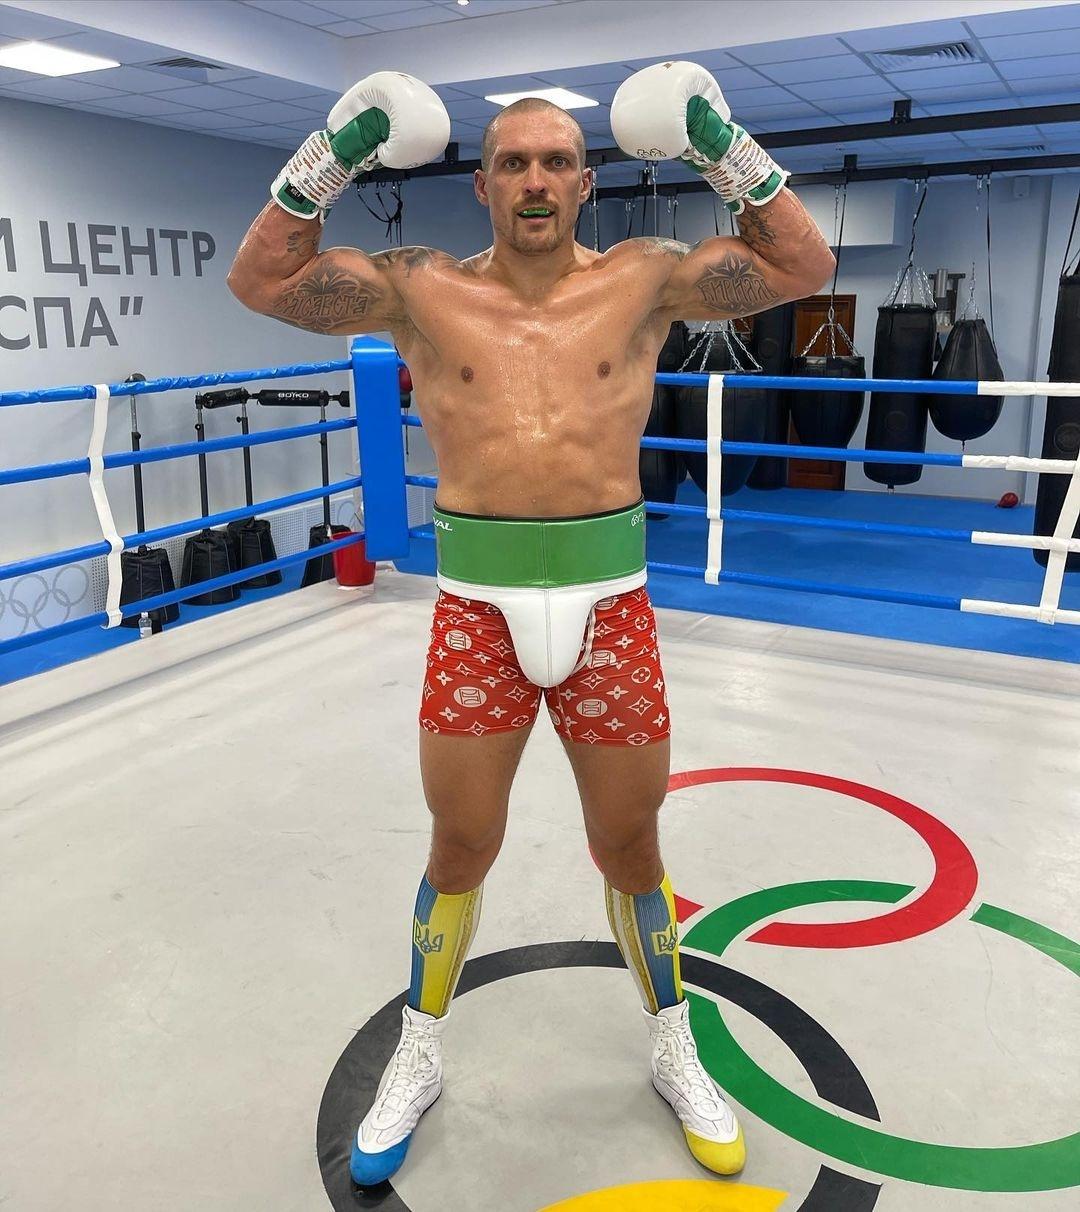 Rússia convoca ex-campeão mundial de boxe para guerra com Ucrânia